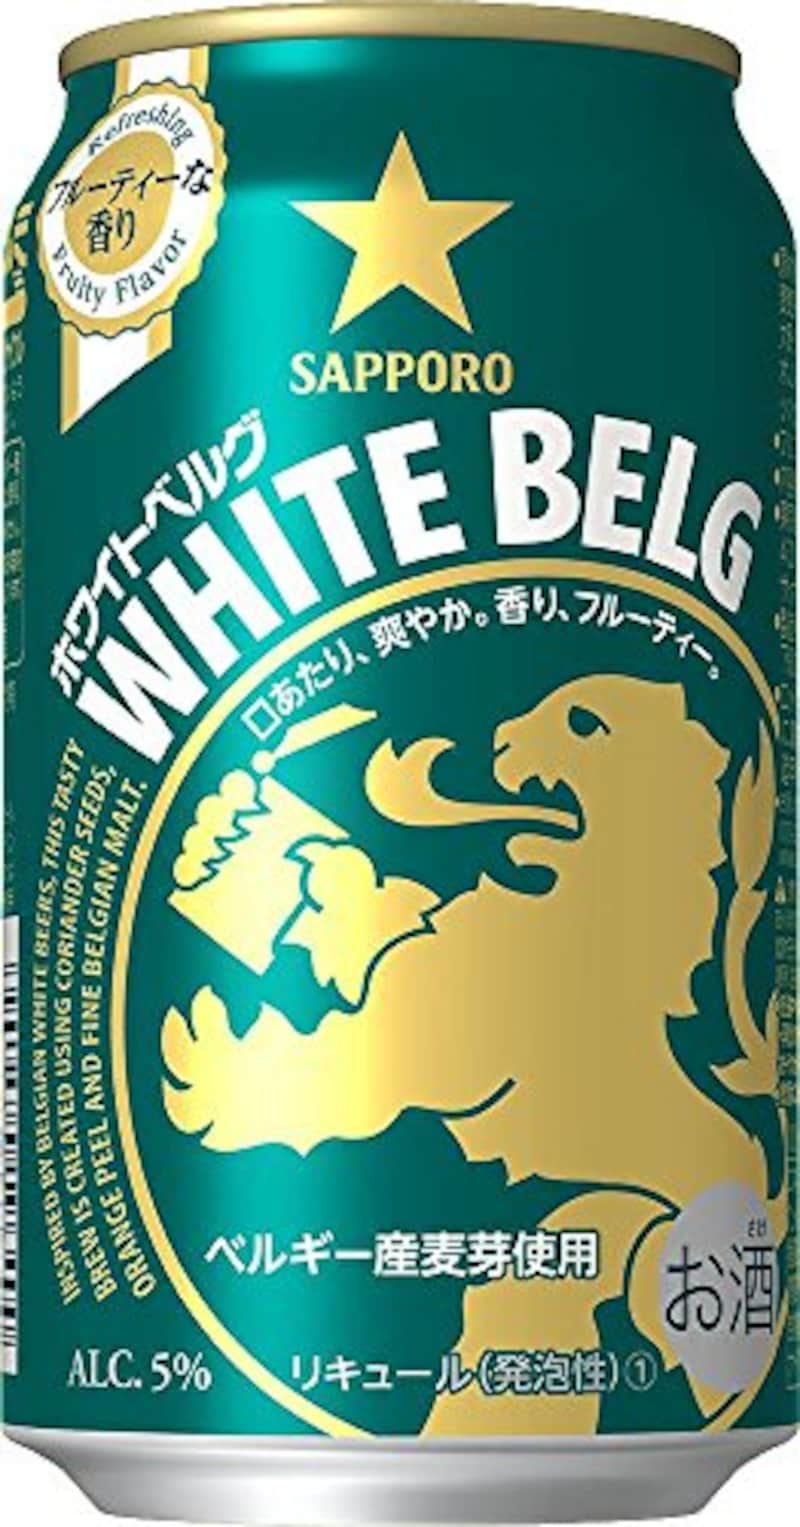 サッポロビール,ホワイトベルグ 24本セット